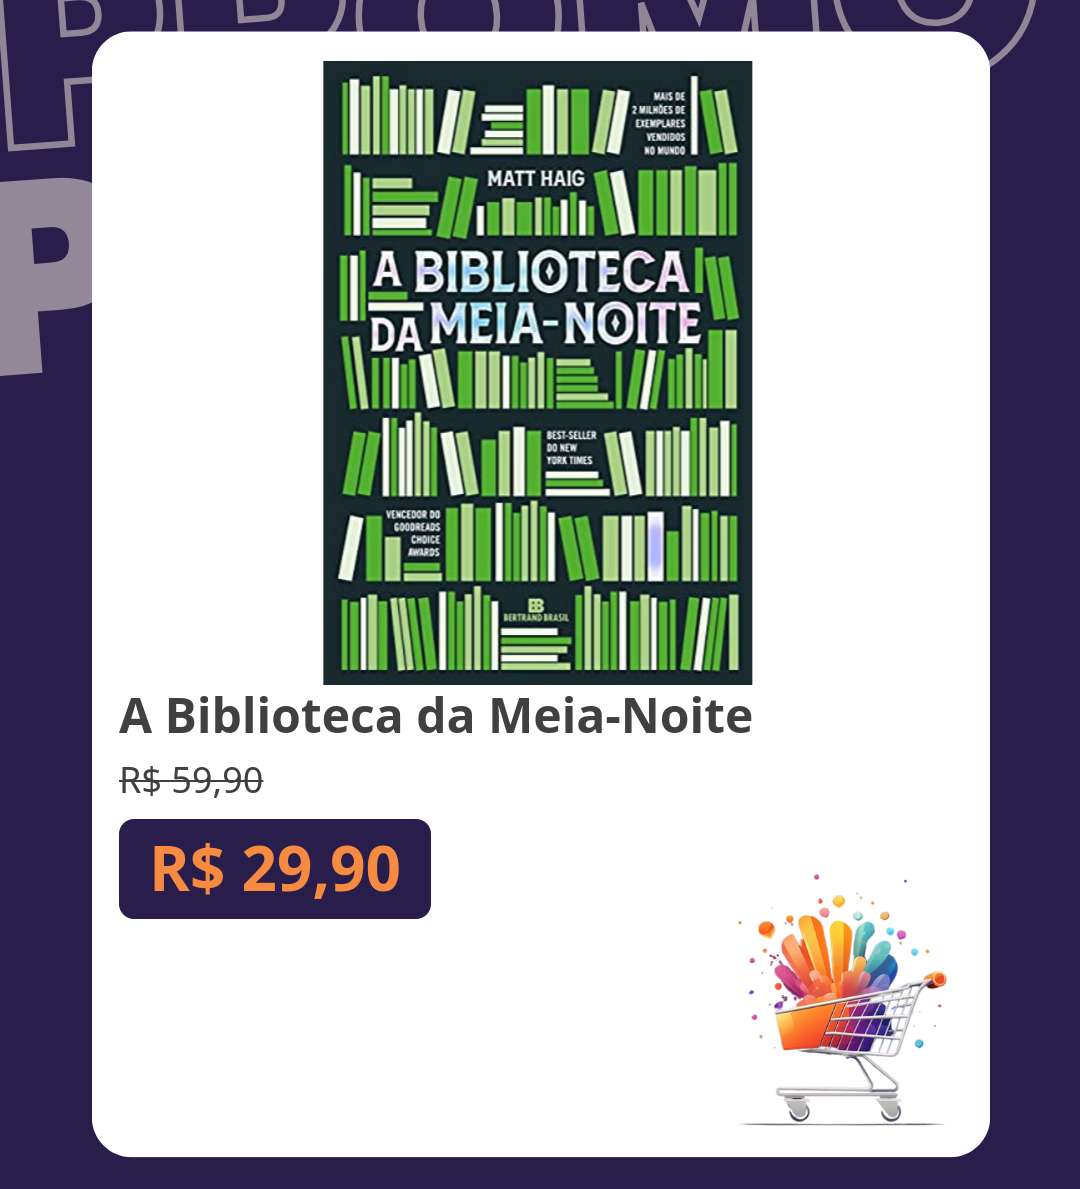 📗 A Biblioteca da Meia-Noite
De R$ 59,90 por R$ 29,90

amzn.to/3wzwWca